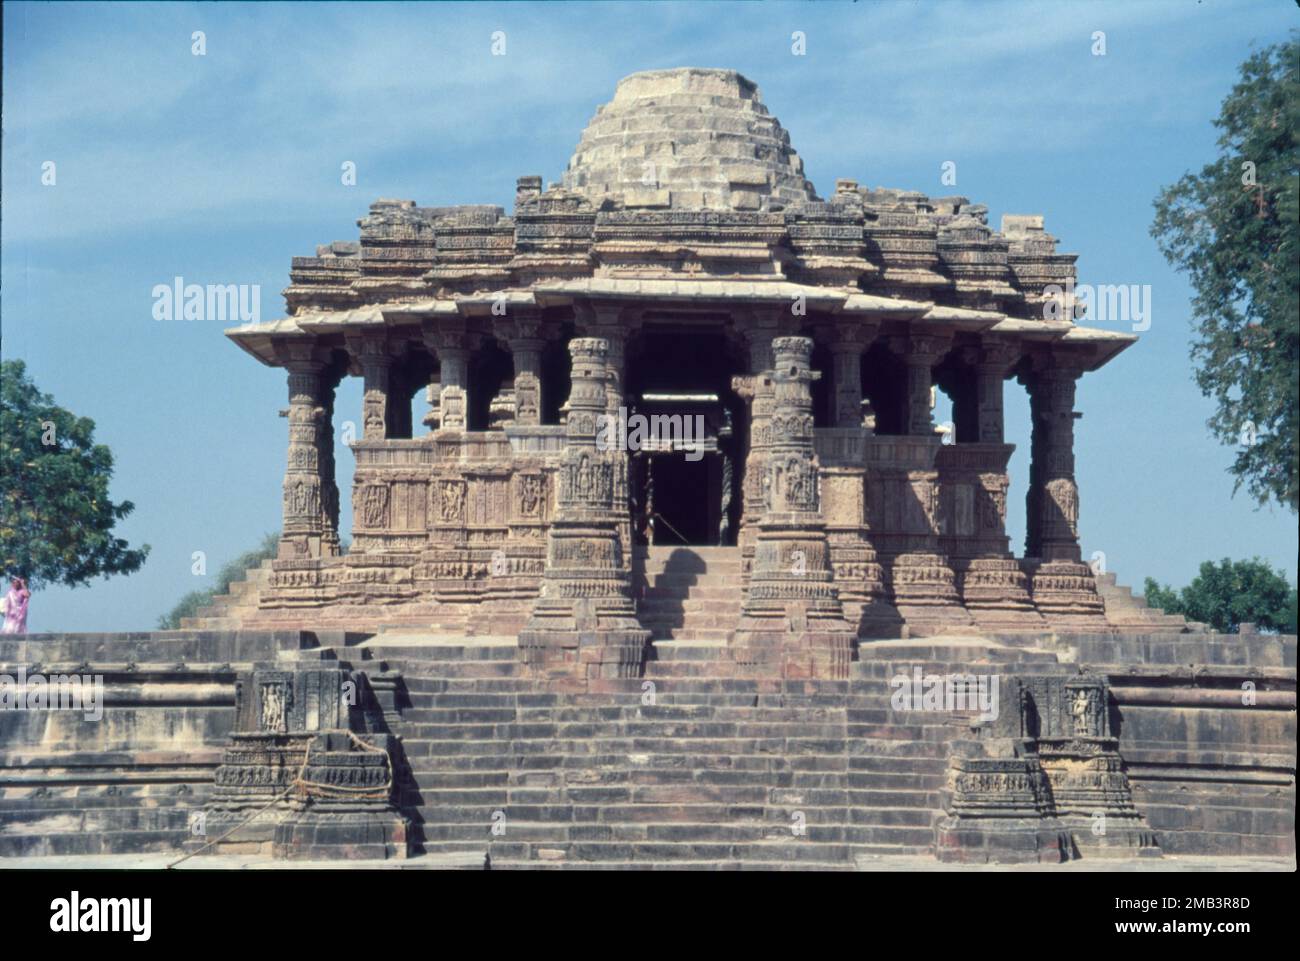 Le Temple du Soleil de Modhéra est un temple hindou dédié à la divinité solaire Surya situé dans le village de Modhéra, dans le district de Mehsana, à Gujarat, en Inde. Il est situé sur la rive de la rivière Pushpagati. Il a été construit après 1026-27 EC pendant le règne de Bhima I de la dynastie Chaulukya. Lorsque vous entrez dans le complexe historique, vous venez d'abord à travers le magnifique kund connu sous le nom de Ramakund, construit en forme rectangulaire contenant 108 sanctuaires à divers dieux et demi-dieux. Banque D'Images